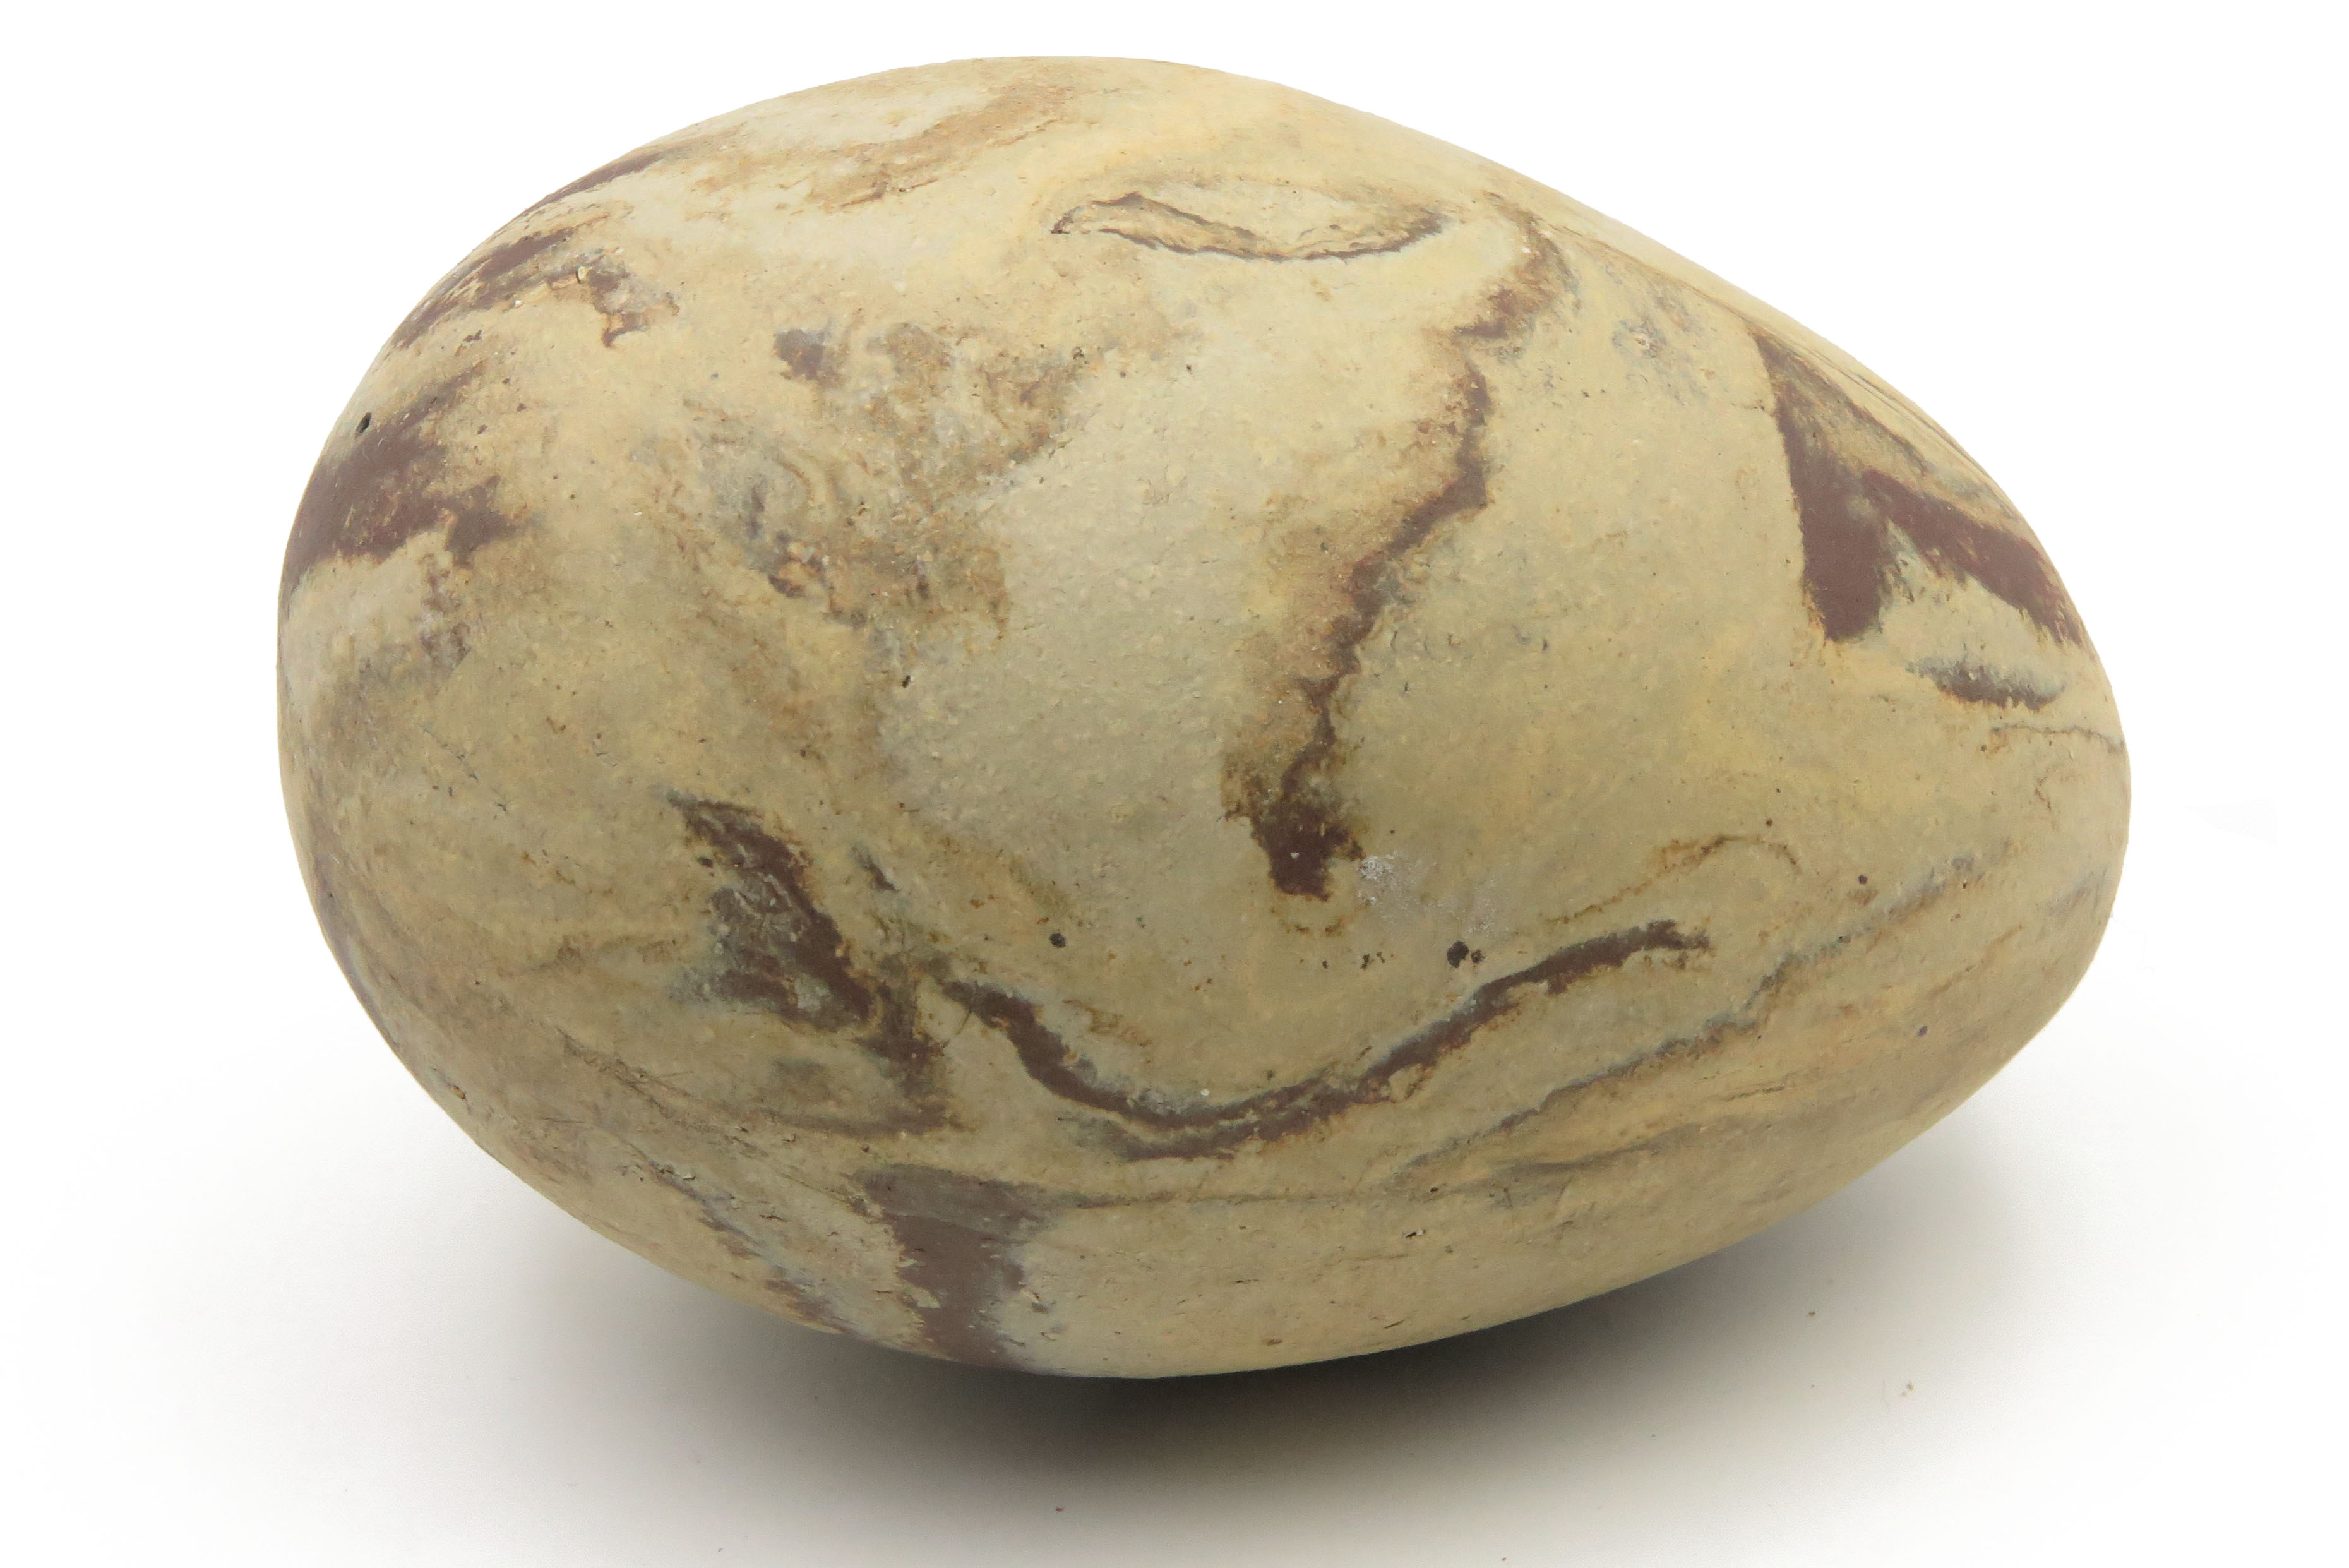  Eier aus Naturton marmoriert/ M 15 cm